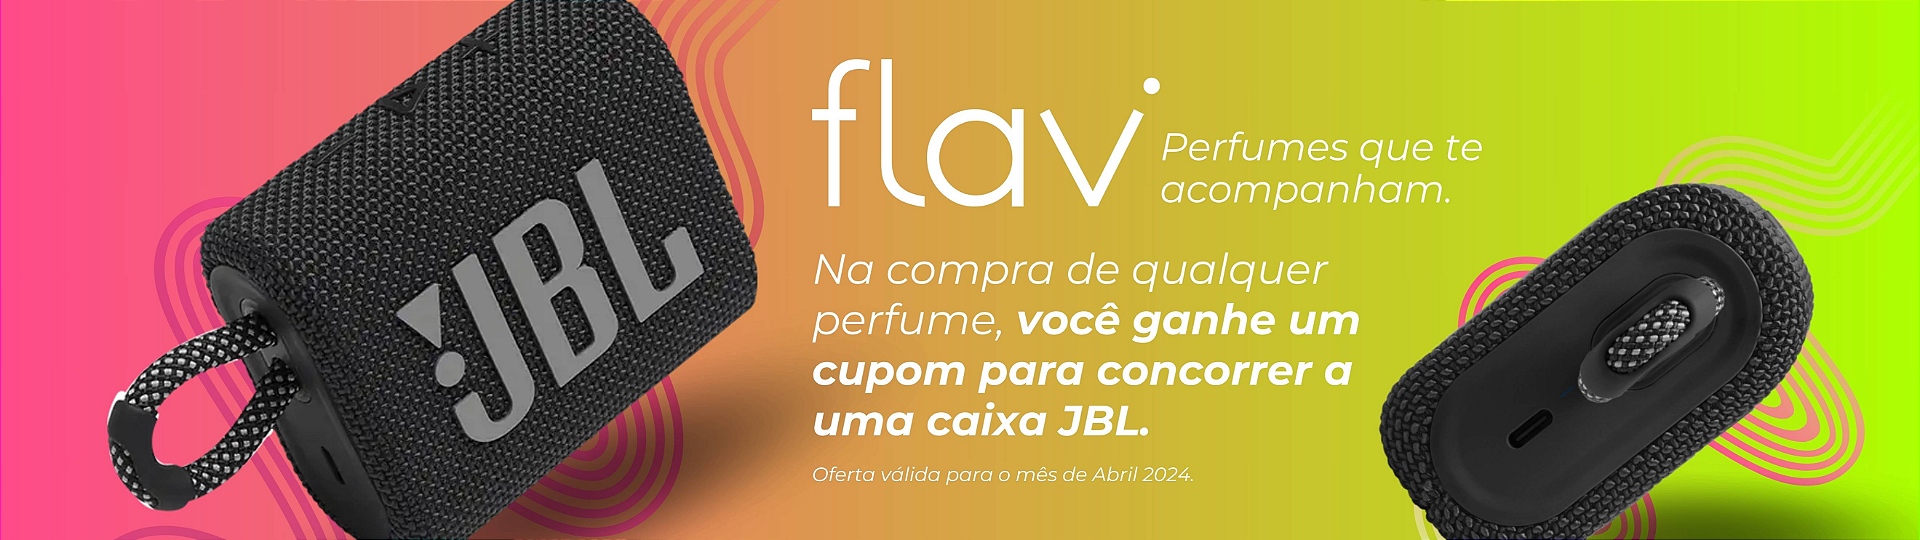 Flavi Cosméticos - JBL